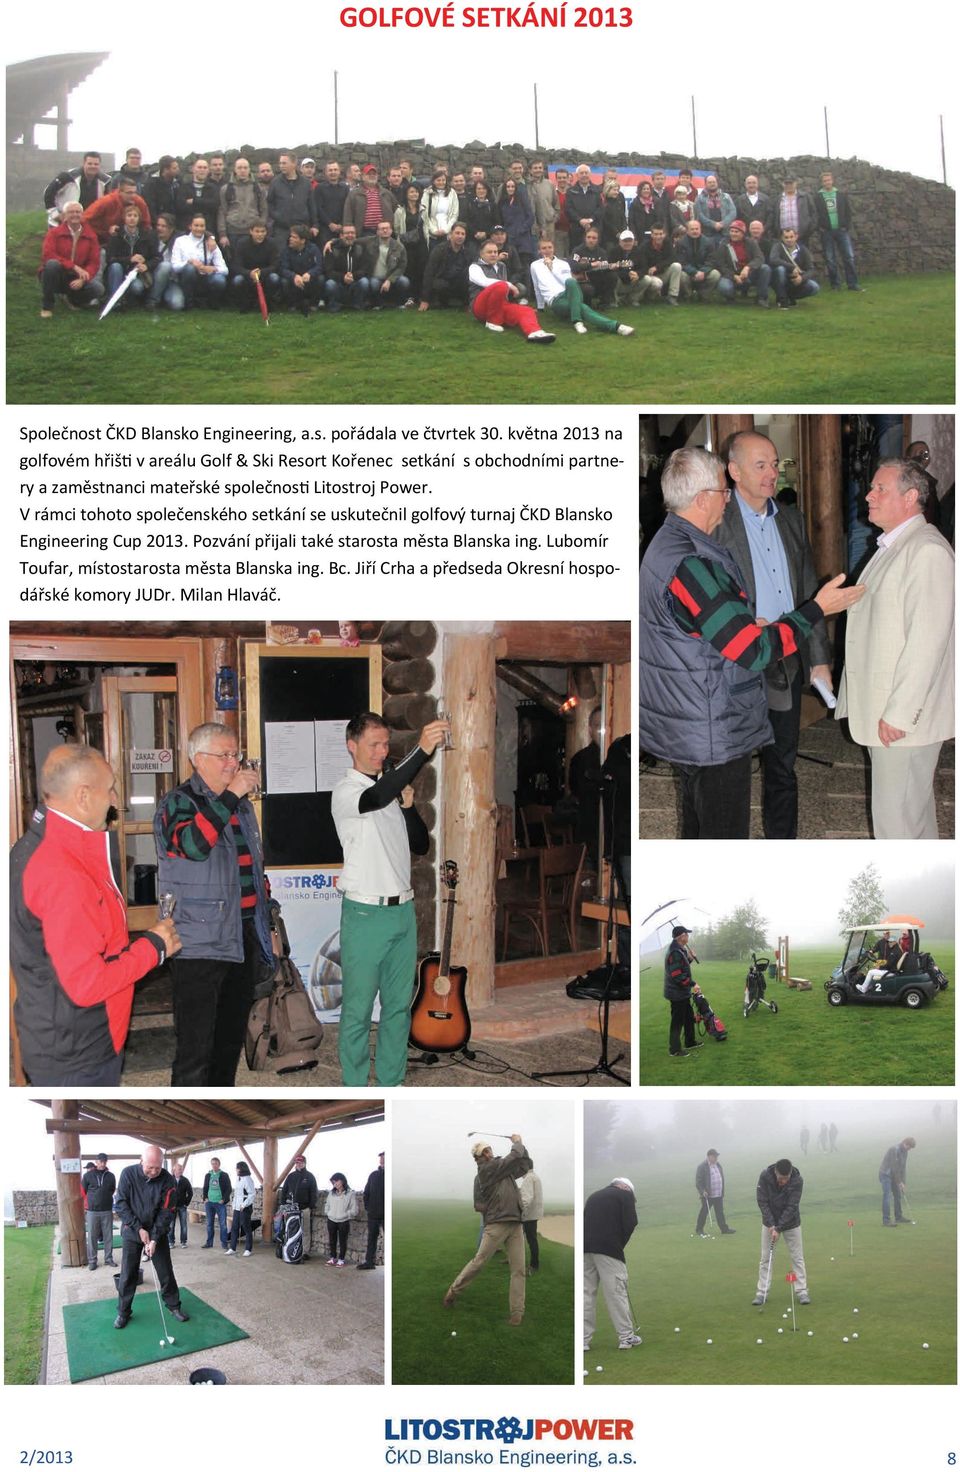 Litostroj Power. V rámci tohoto společenského setkání se uskutečnil golfový turnaj ČKD Blansko Engineering Cup 2013.